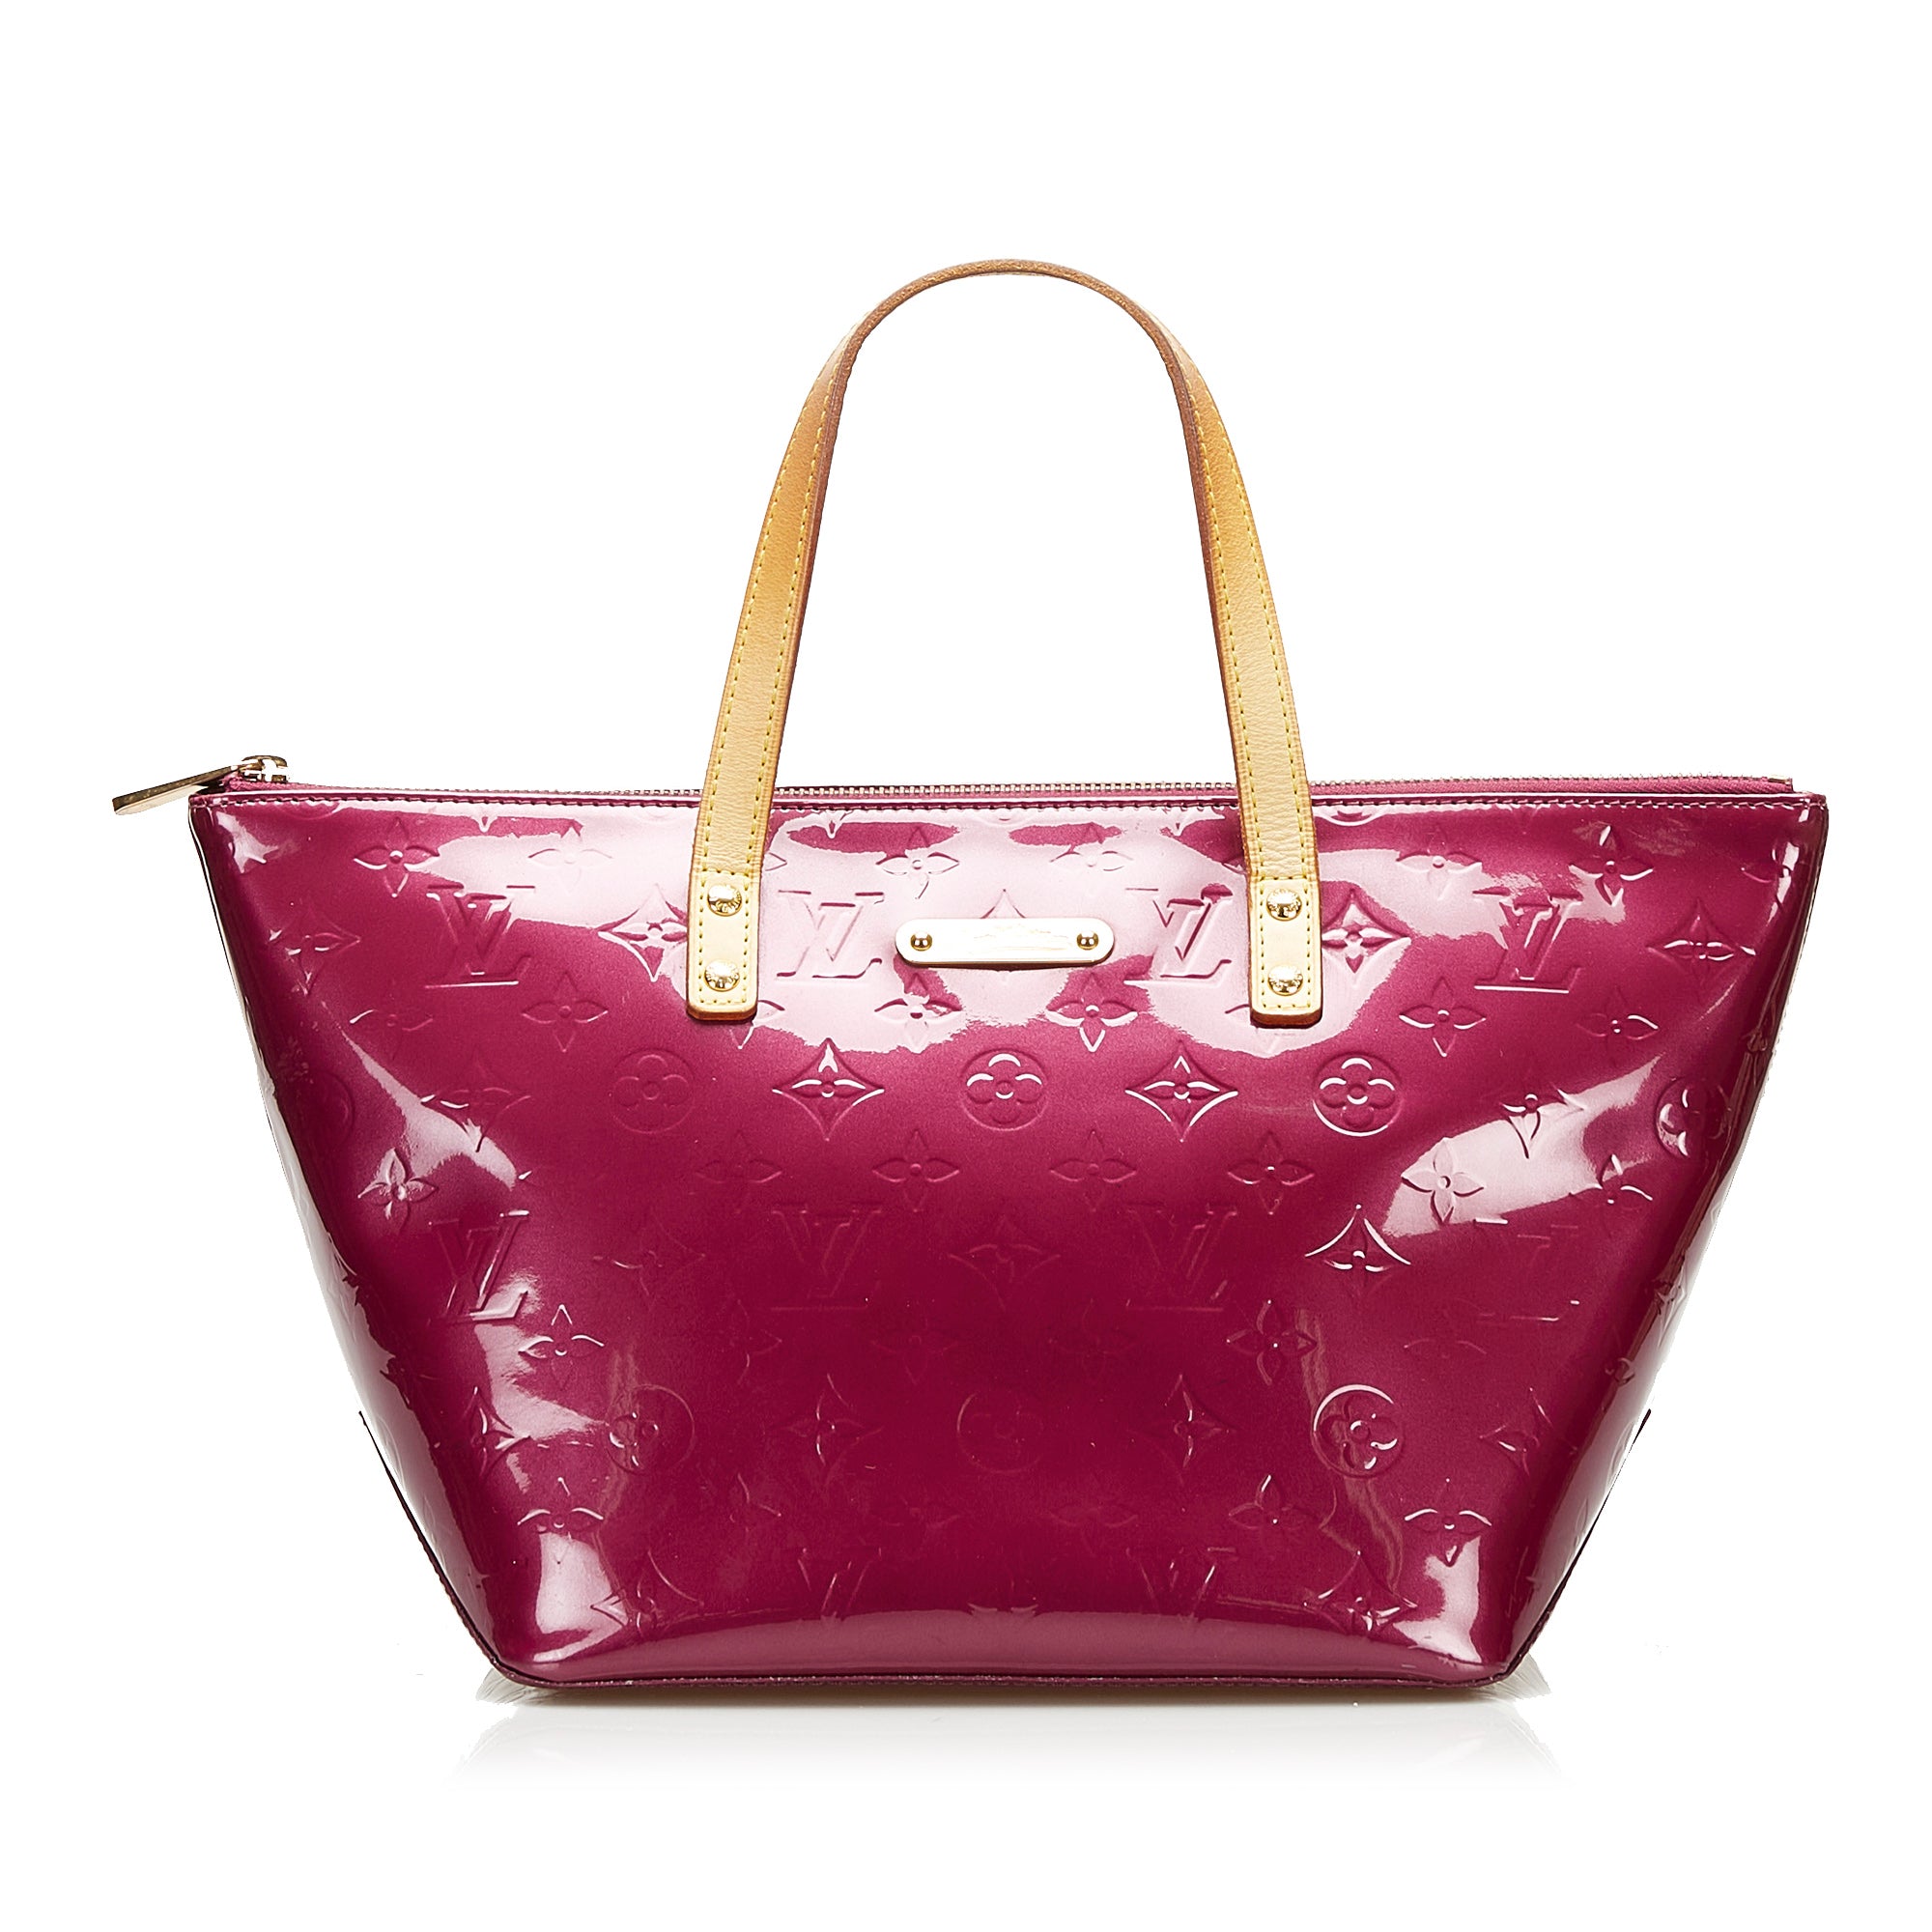 Louis Vuitton Vernis Bellevue PM Tote Bag